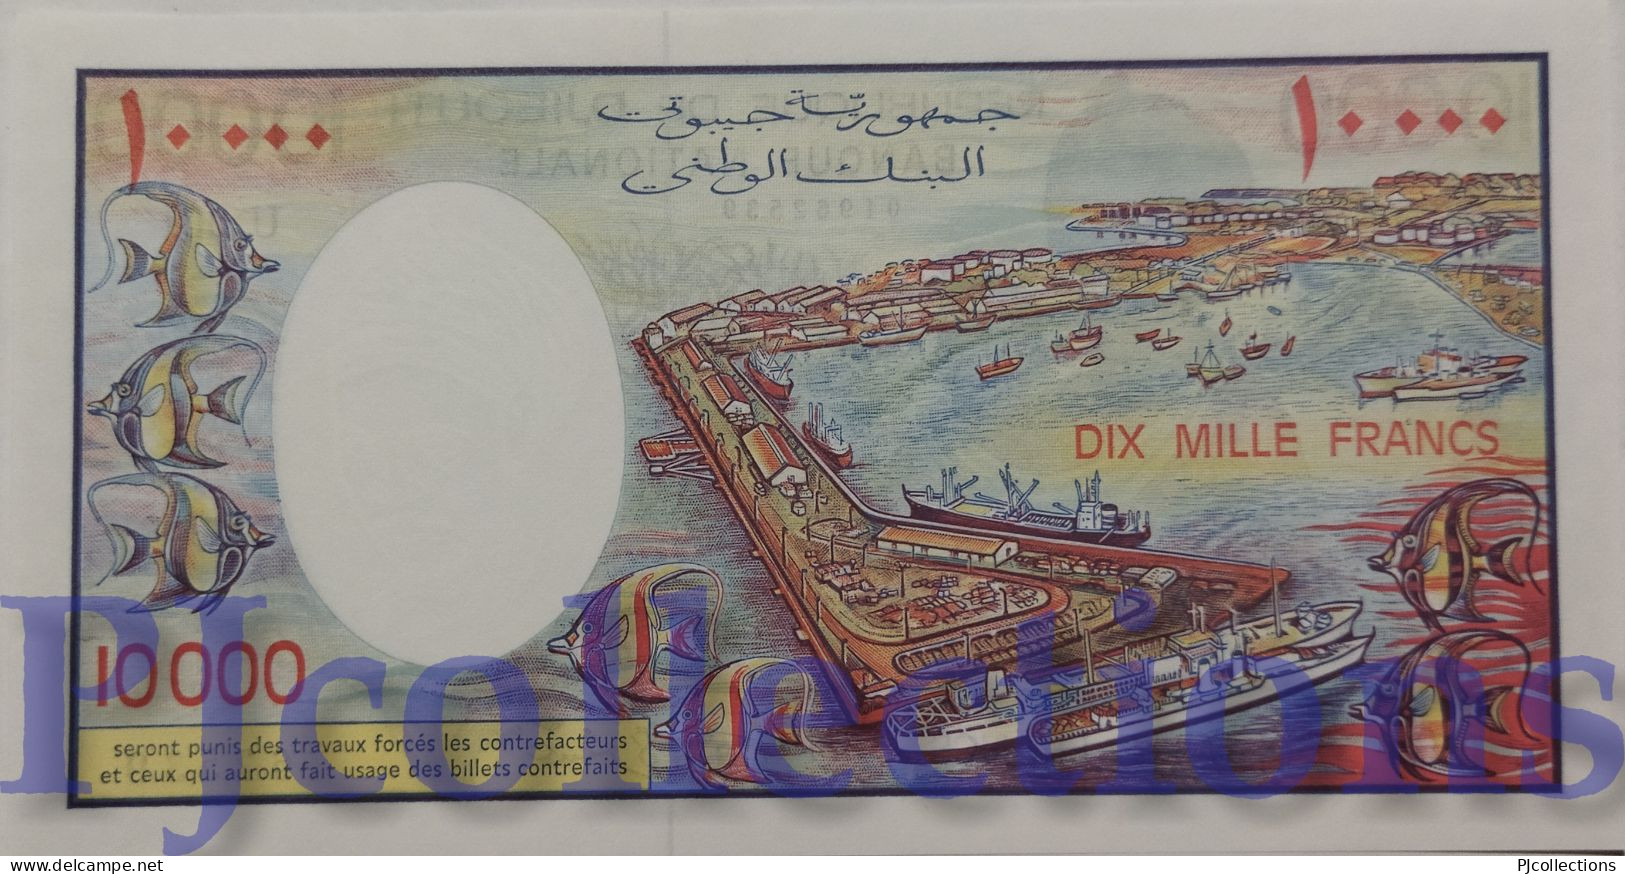 DJIBOUTI 10000 FRANCS 1984 PICK 39b UNC - Djibouti